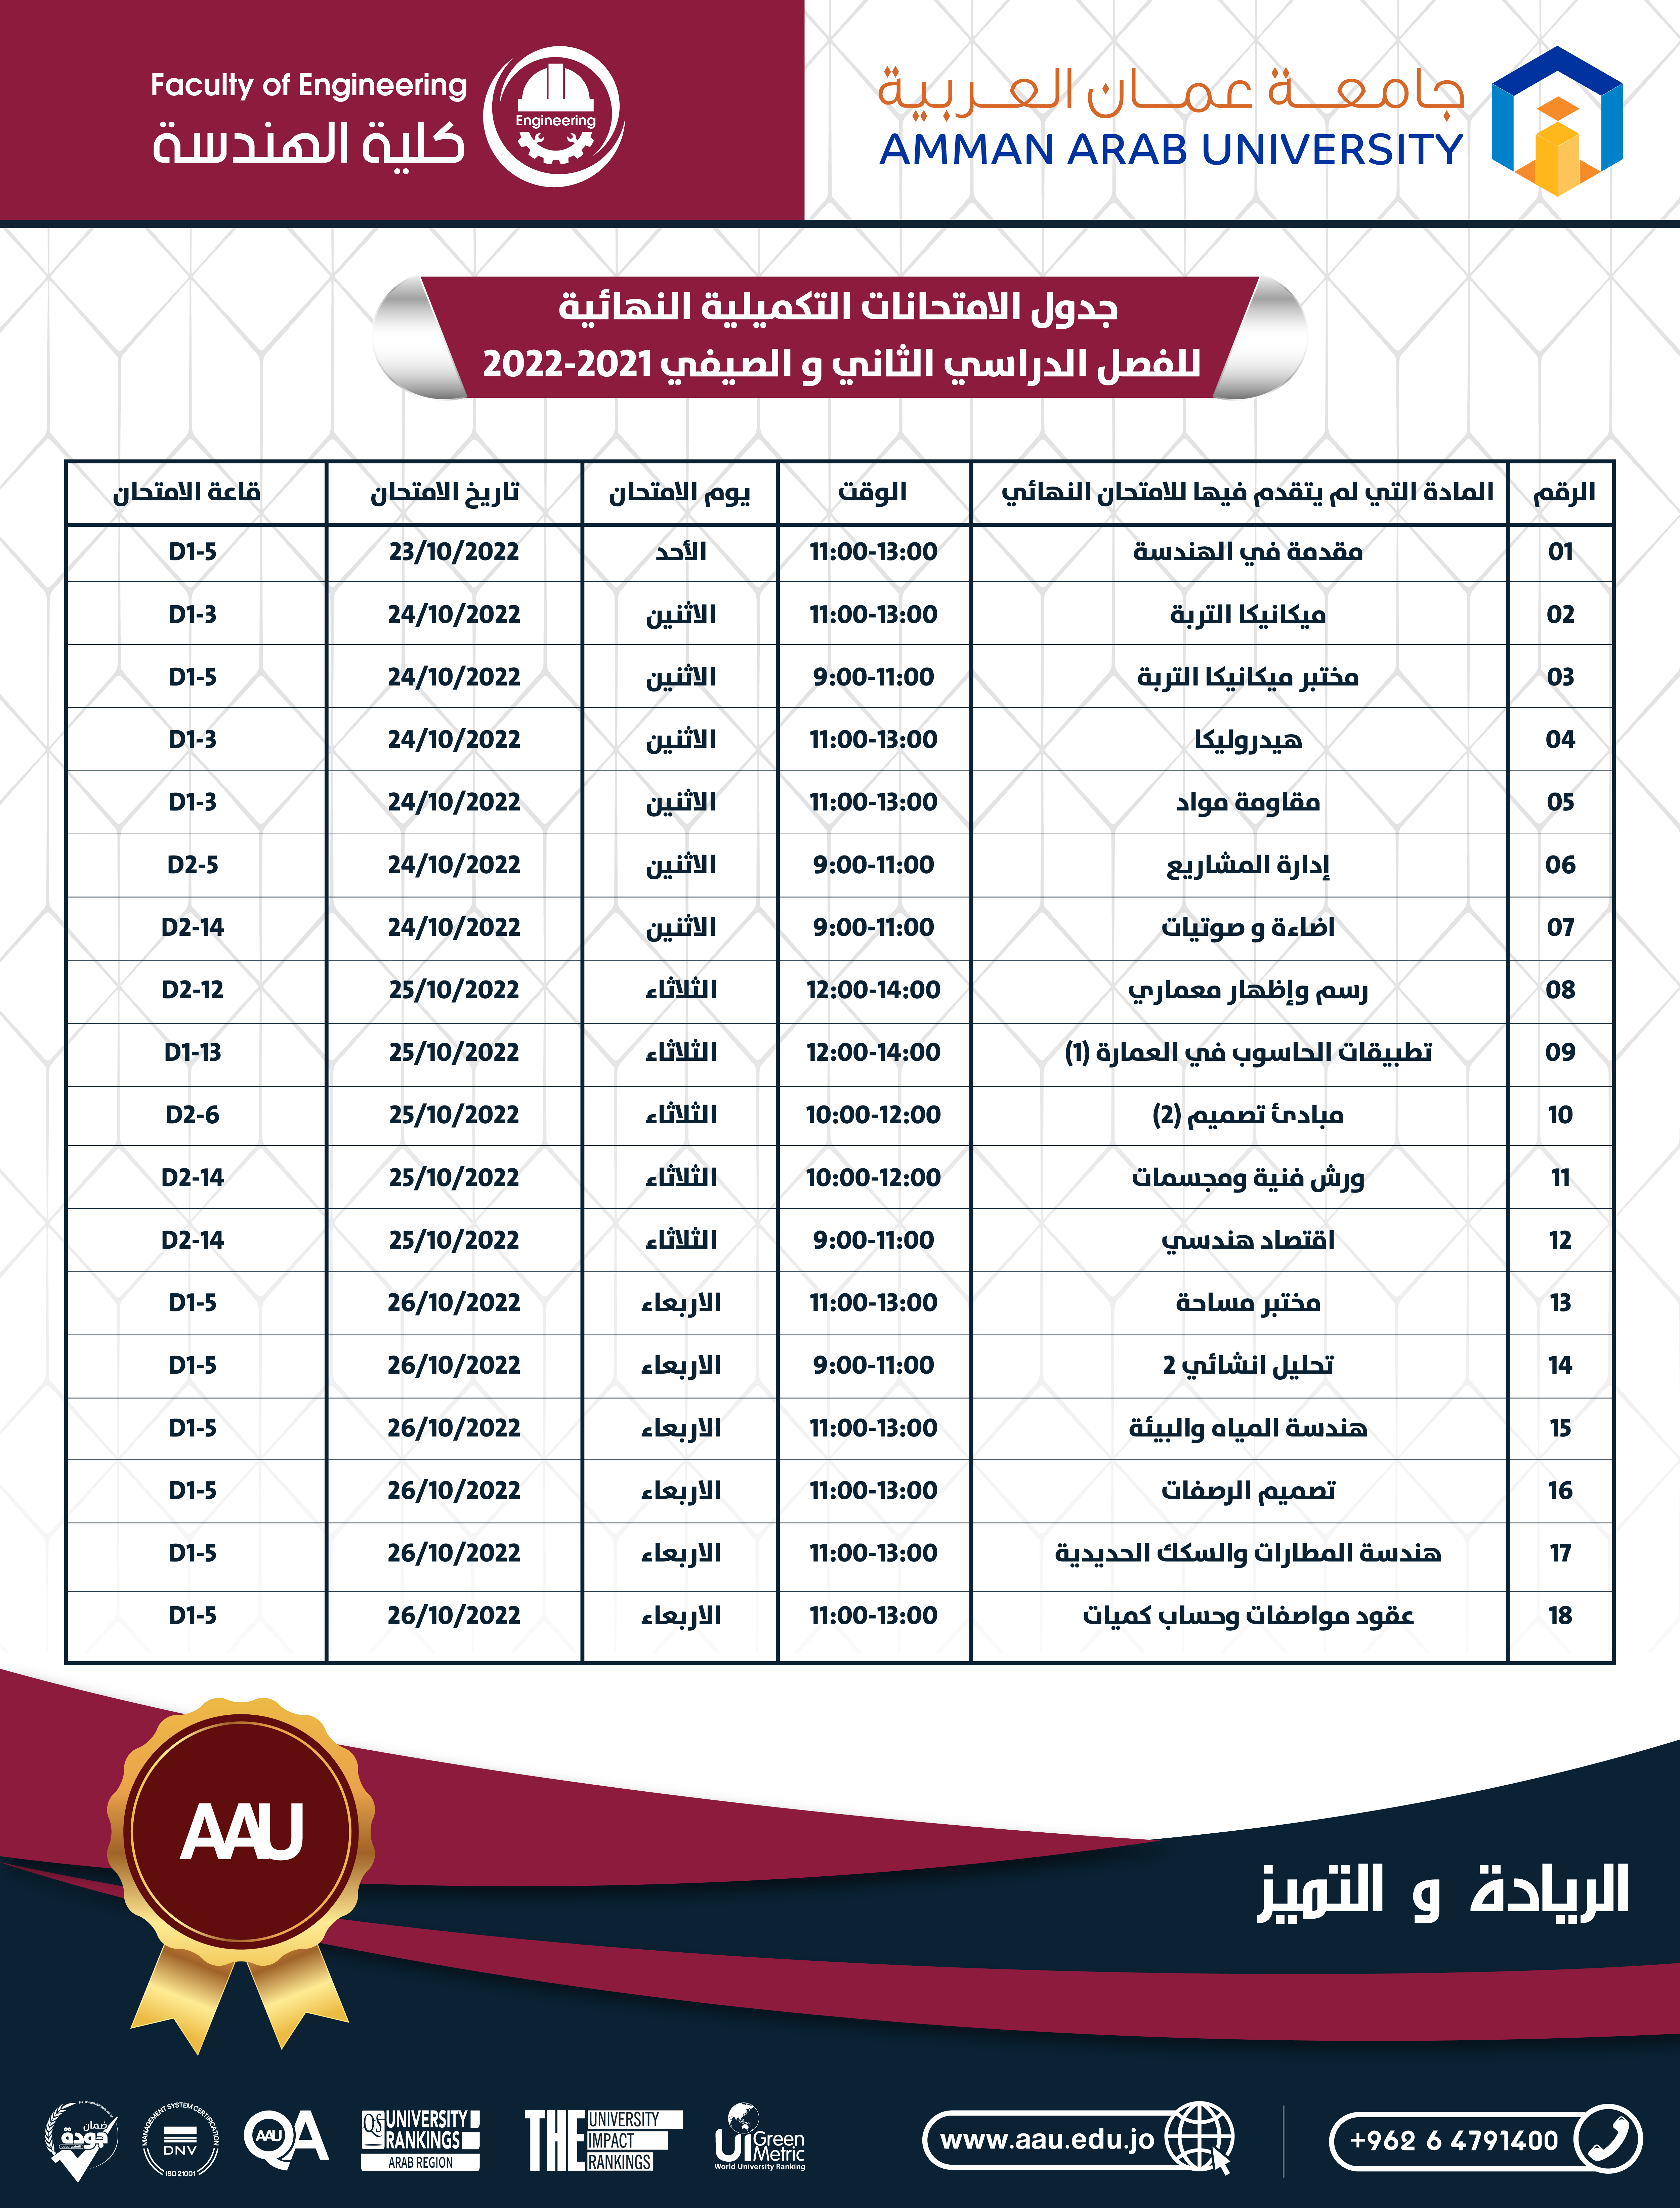 جدول الامتحانات التكميلية النهائية للفصل الدراسي الثاني والصيفي 2021-2022